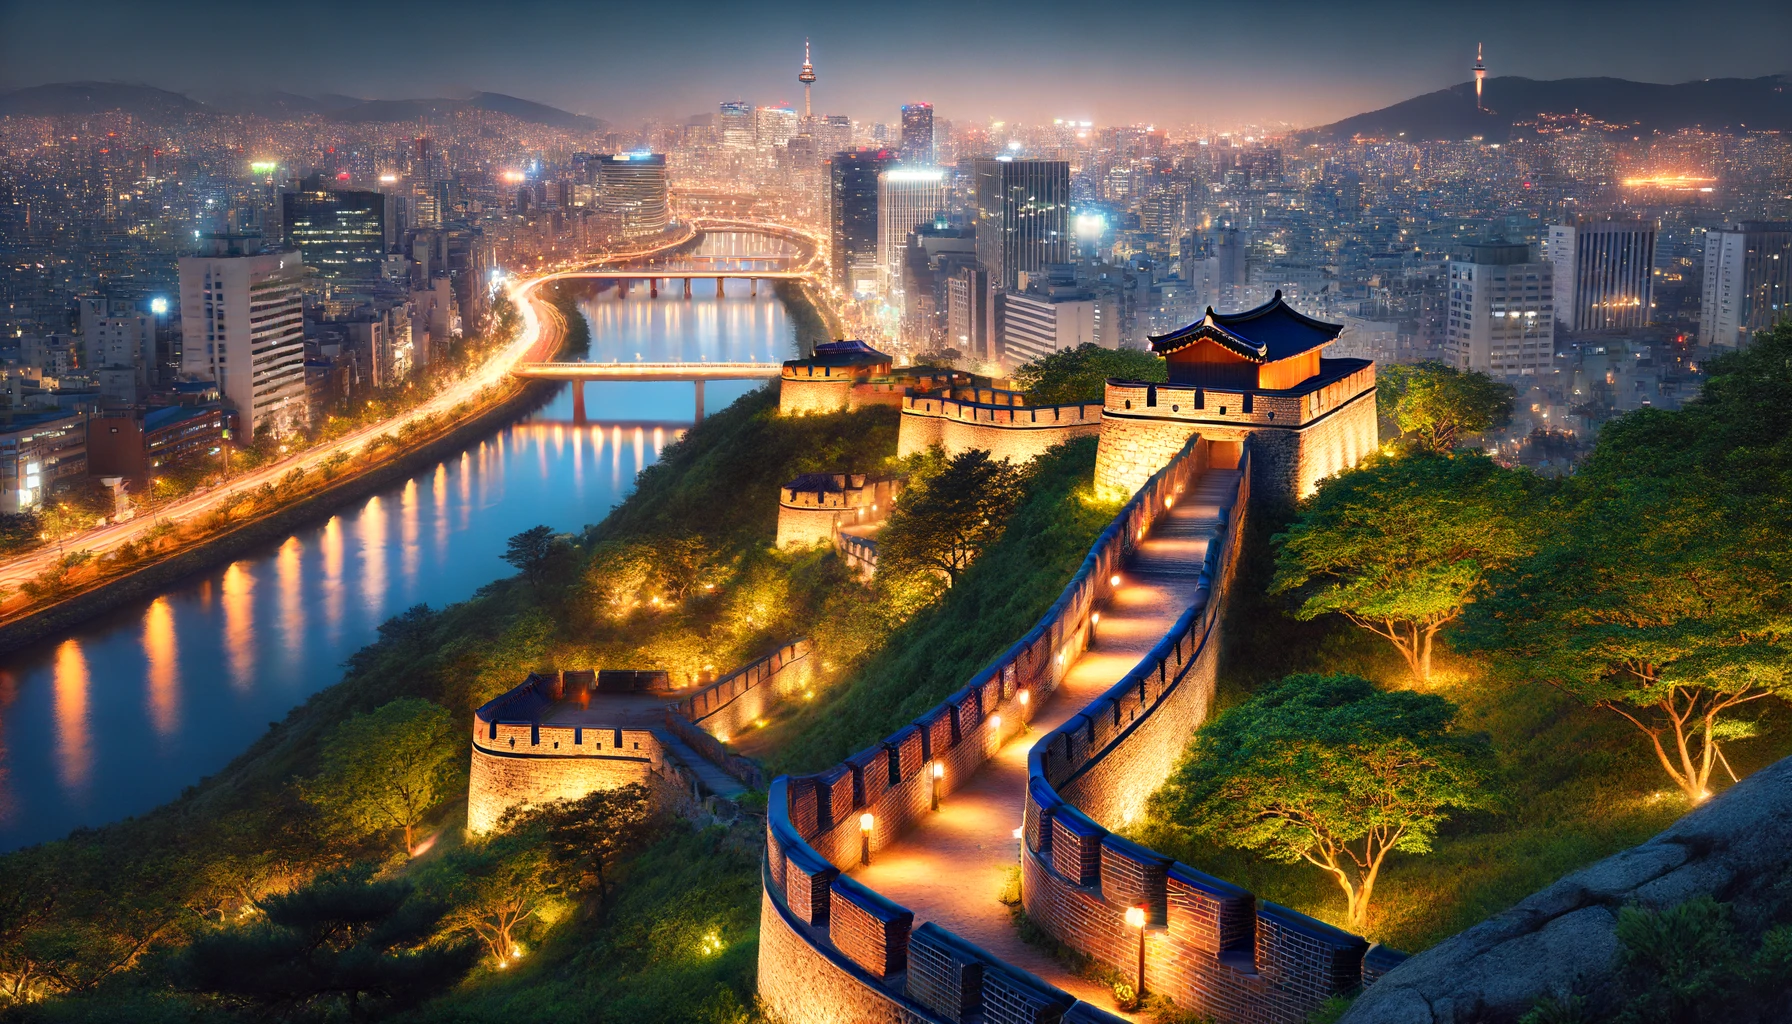 서울의 숨은 유적지 탐방: 잊혀진 역사의 현장을 찾아서